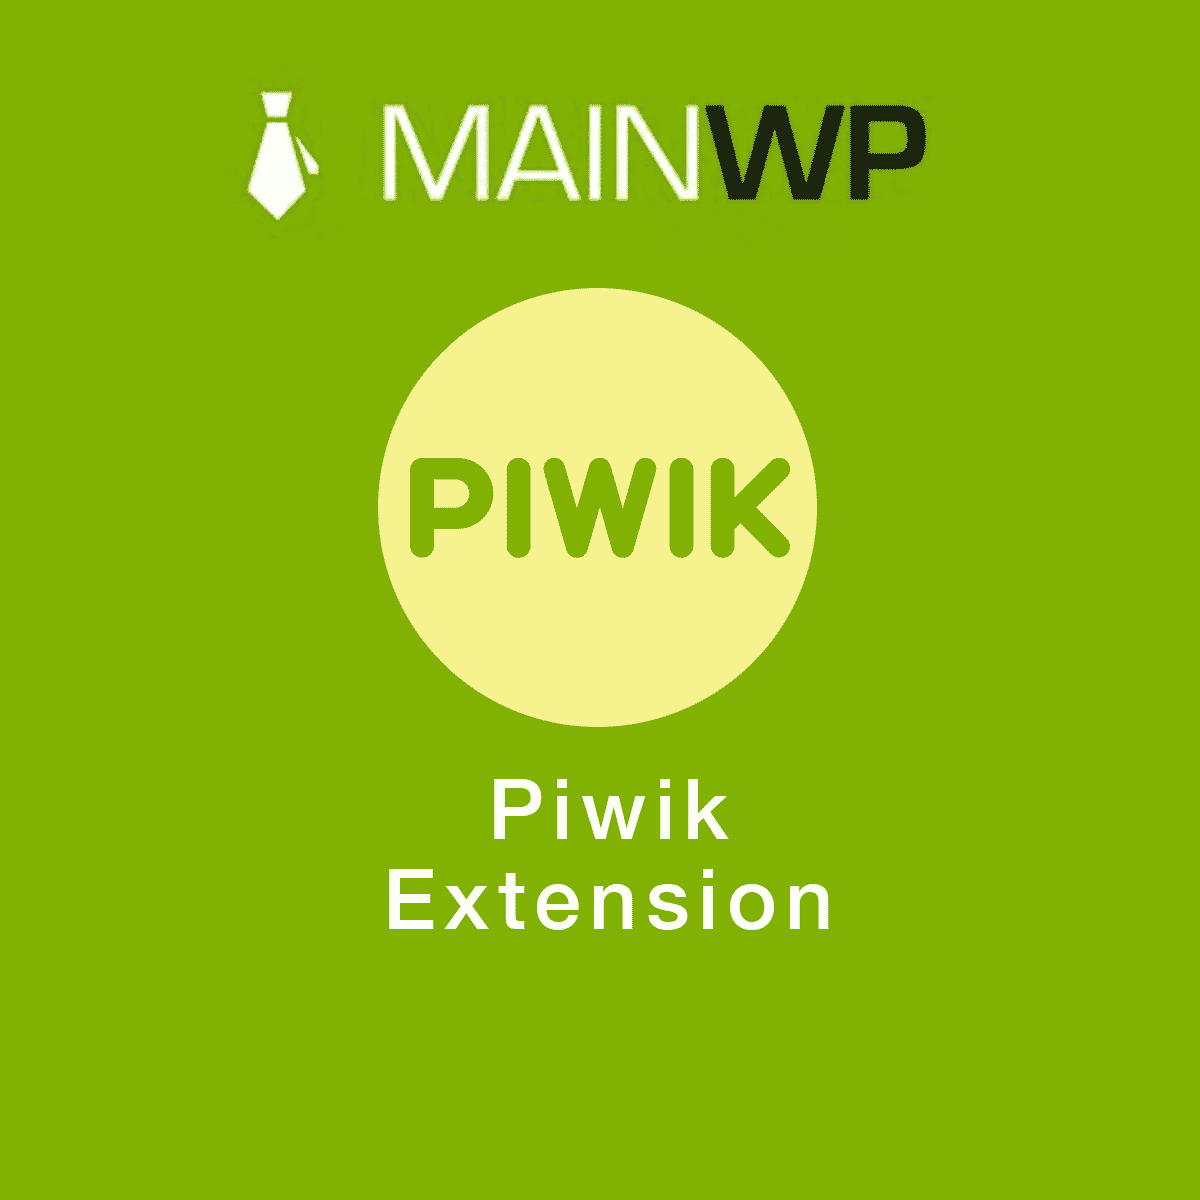 دانلود افزونه وردپرس MainWP Piwik Matomo